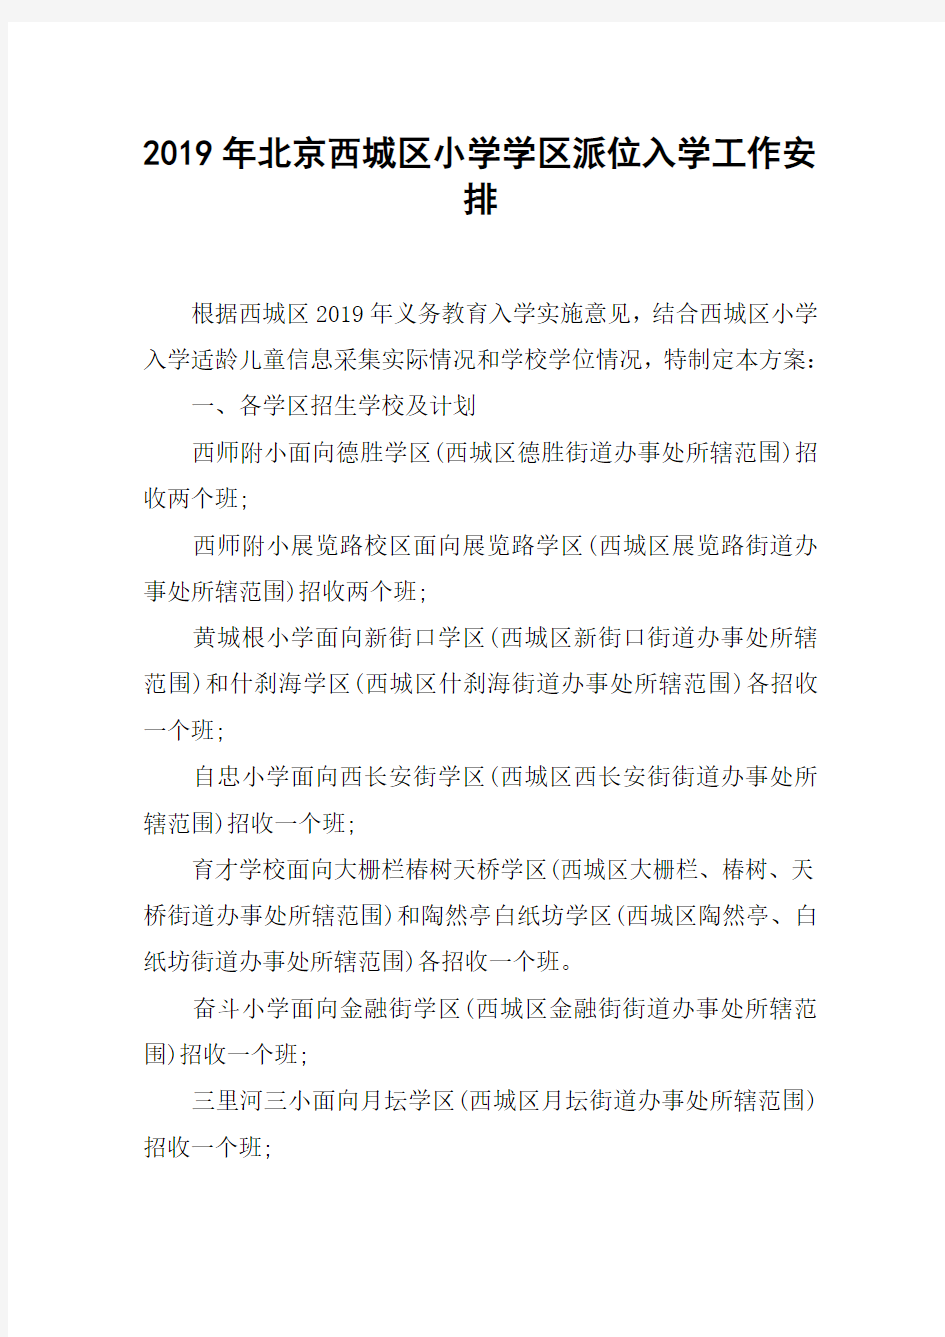 2019年北京西城区小学学区派位入学工作安排